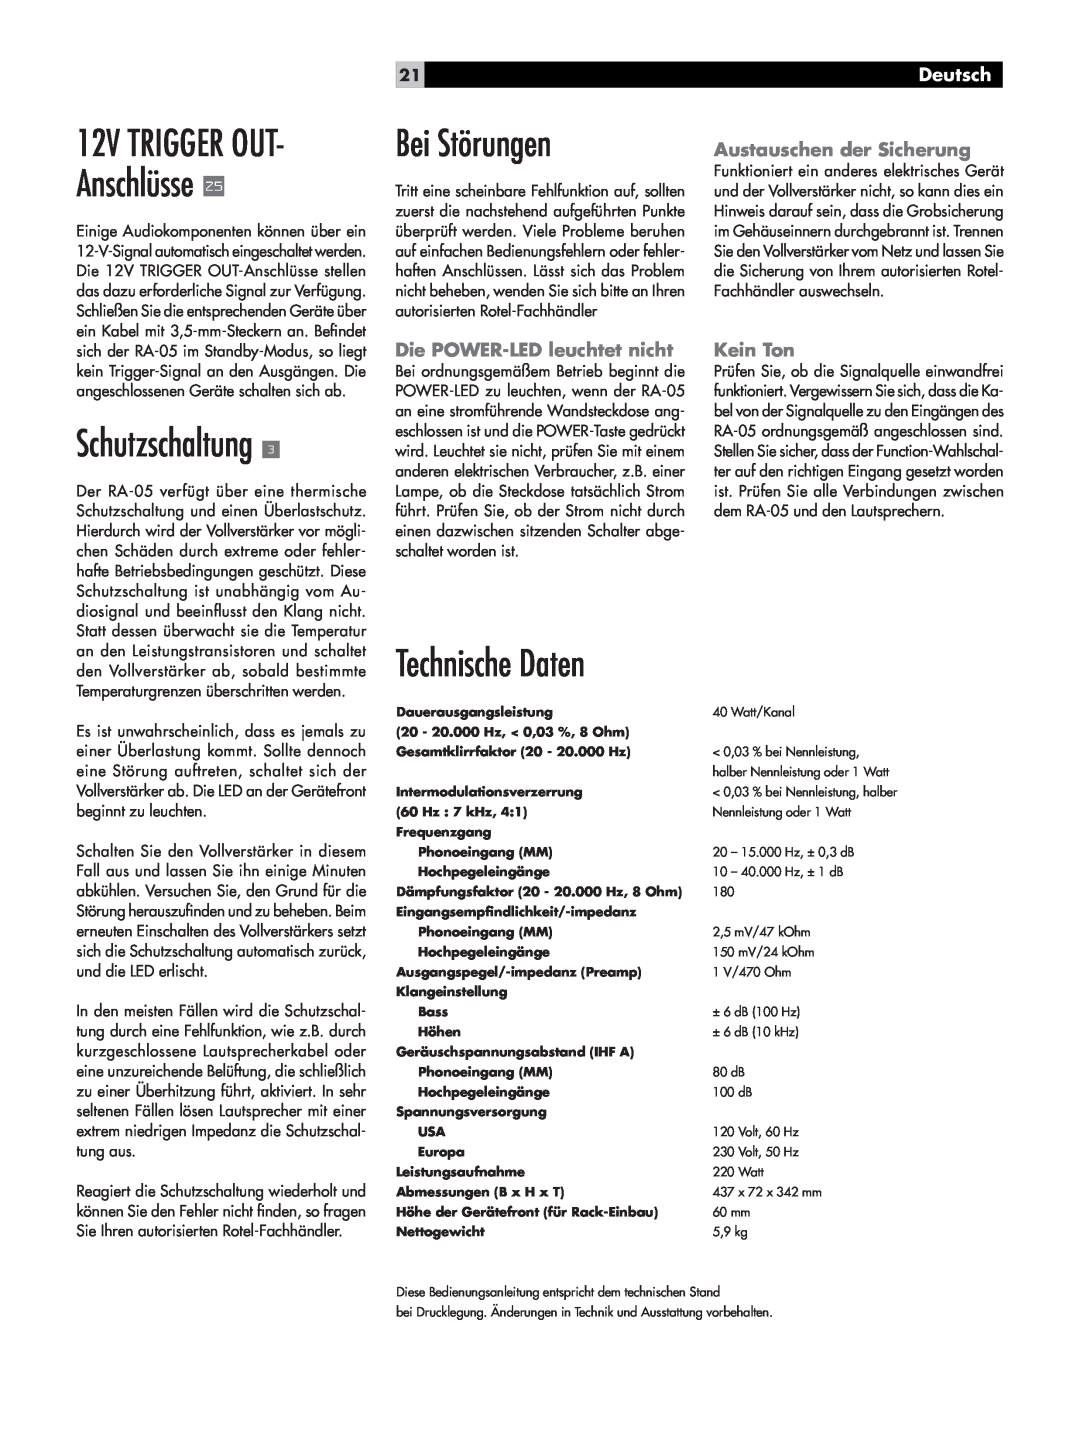 Rotel RA-05 owner manual Bei Störungen, Schutzschaltung, Technische Daten, 12V TRIGGER OUT- Anschlüsse, Deutsch, Kein Ton 